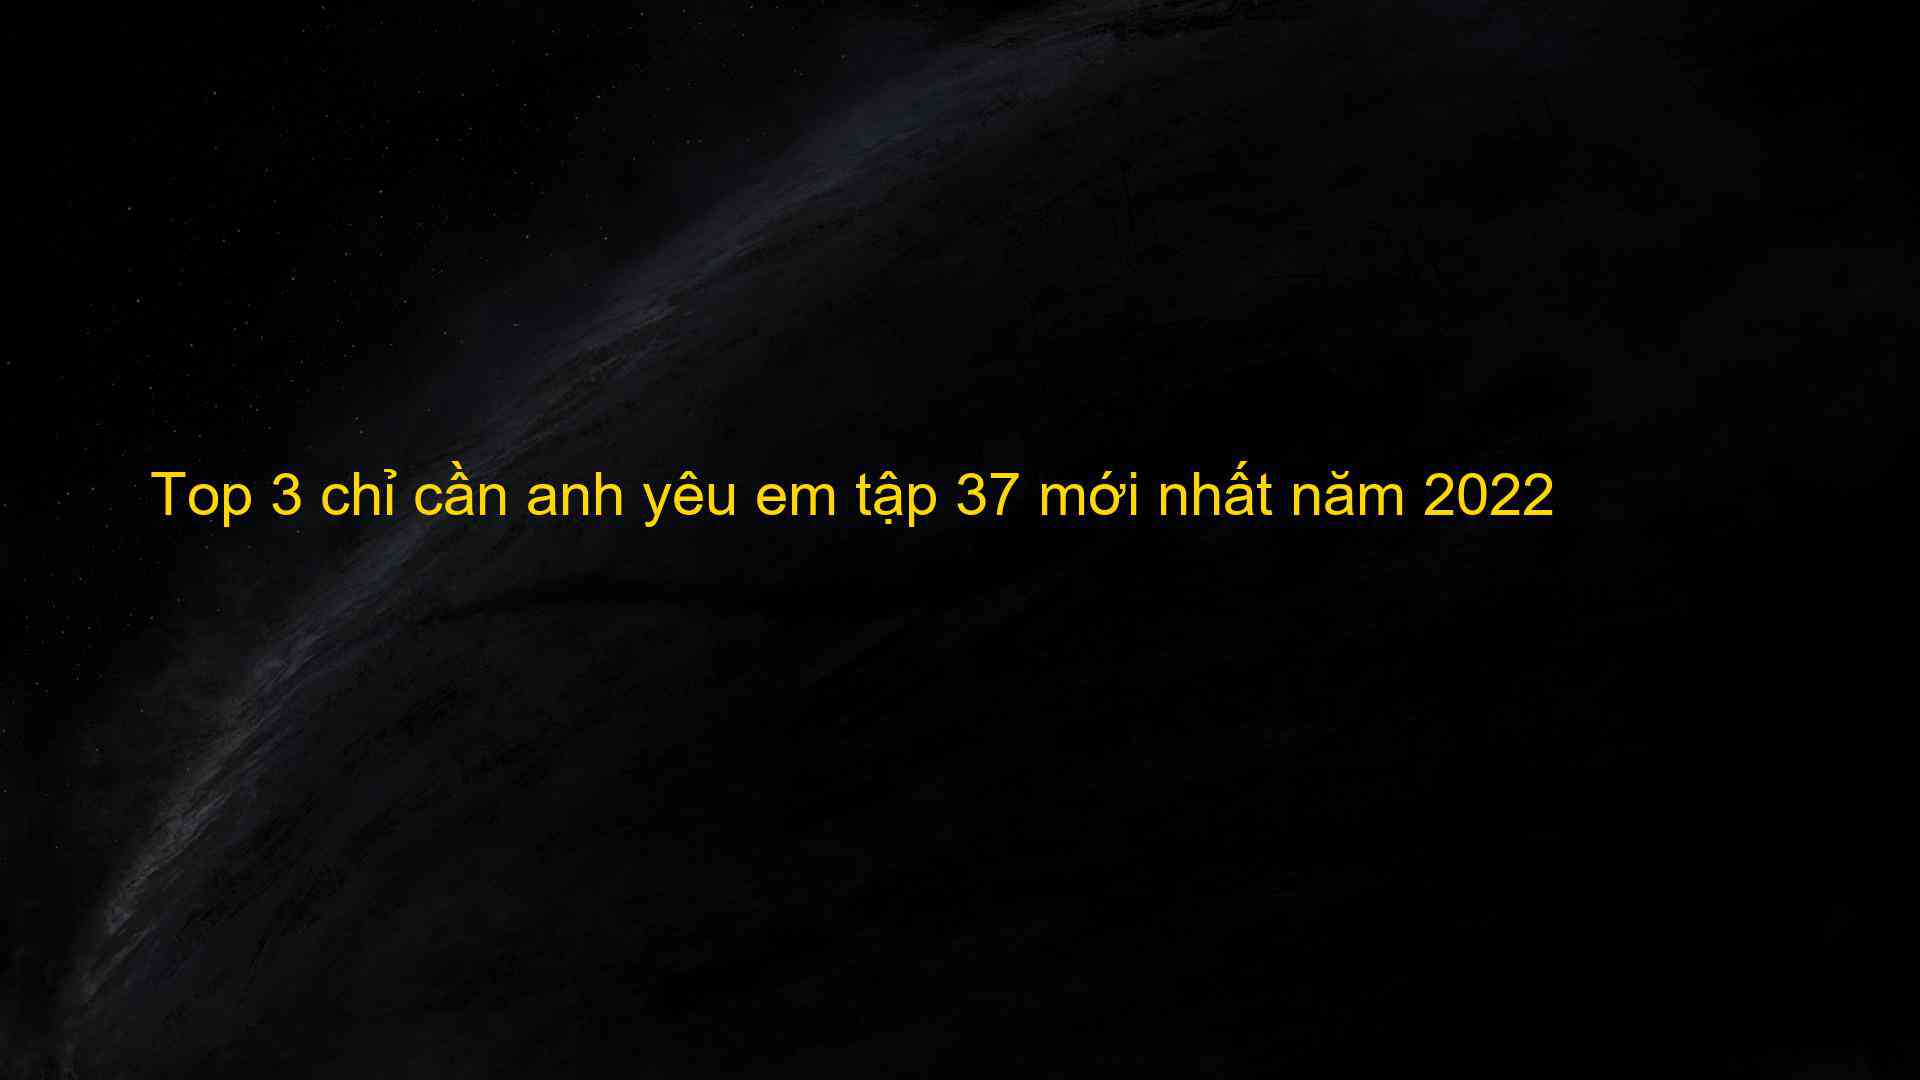 Top 3 chỉ cần anh yêu em tập 37 mới nhất năm 2022 - Kiến Thức Cho Người lao Động Việt Nam